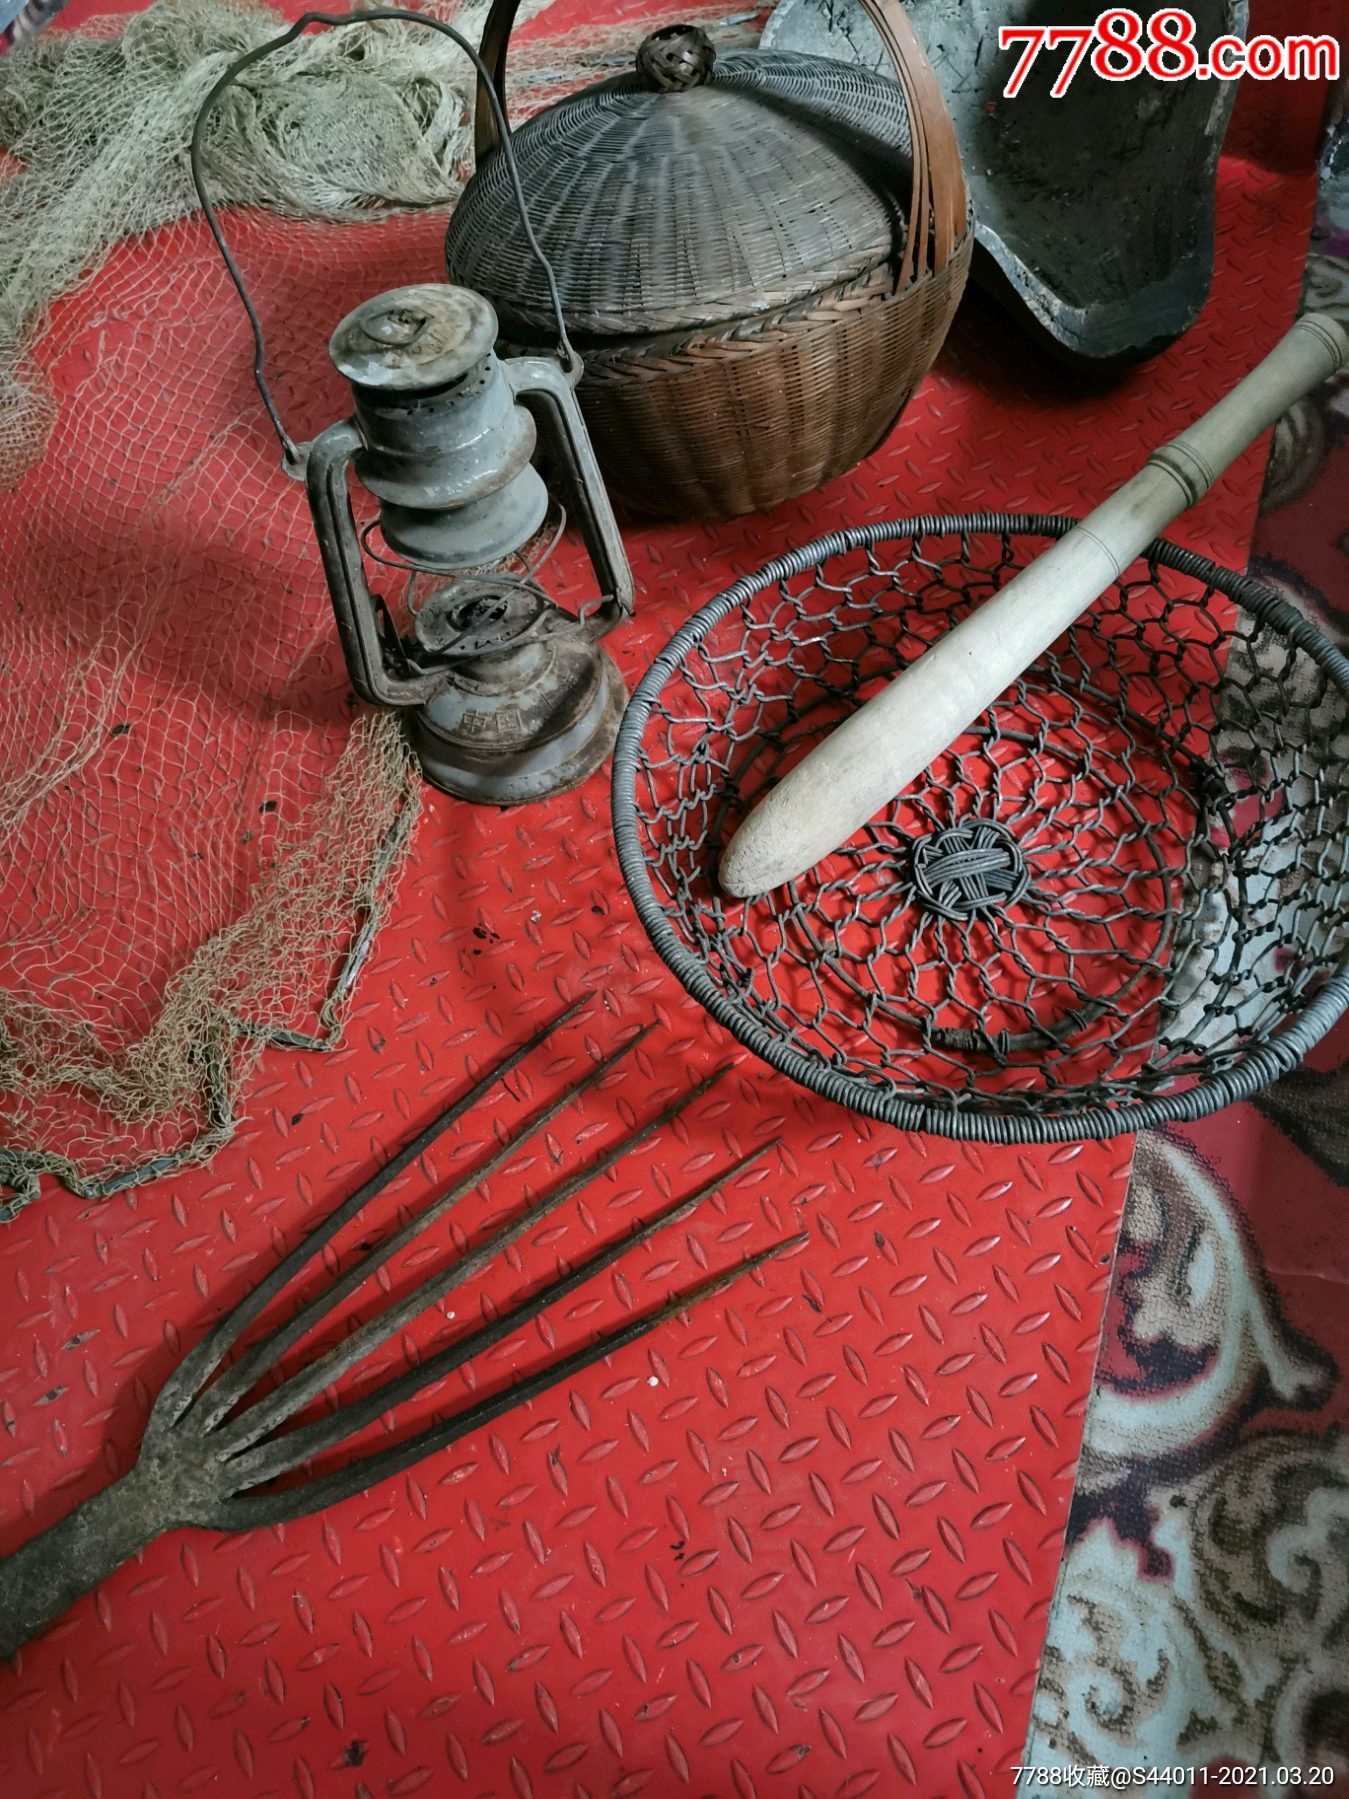 民国渔具,捕鱼工具,老民俗,老物件